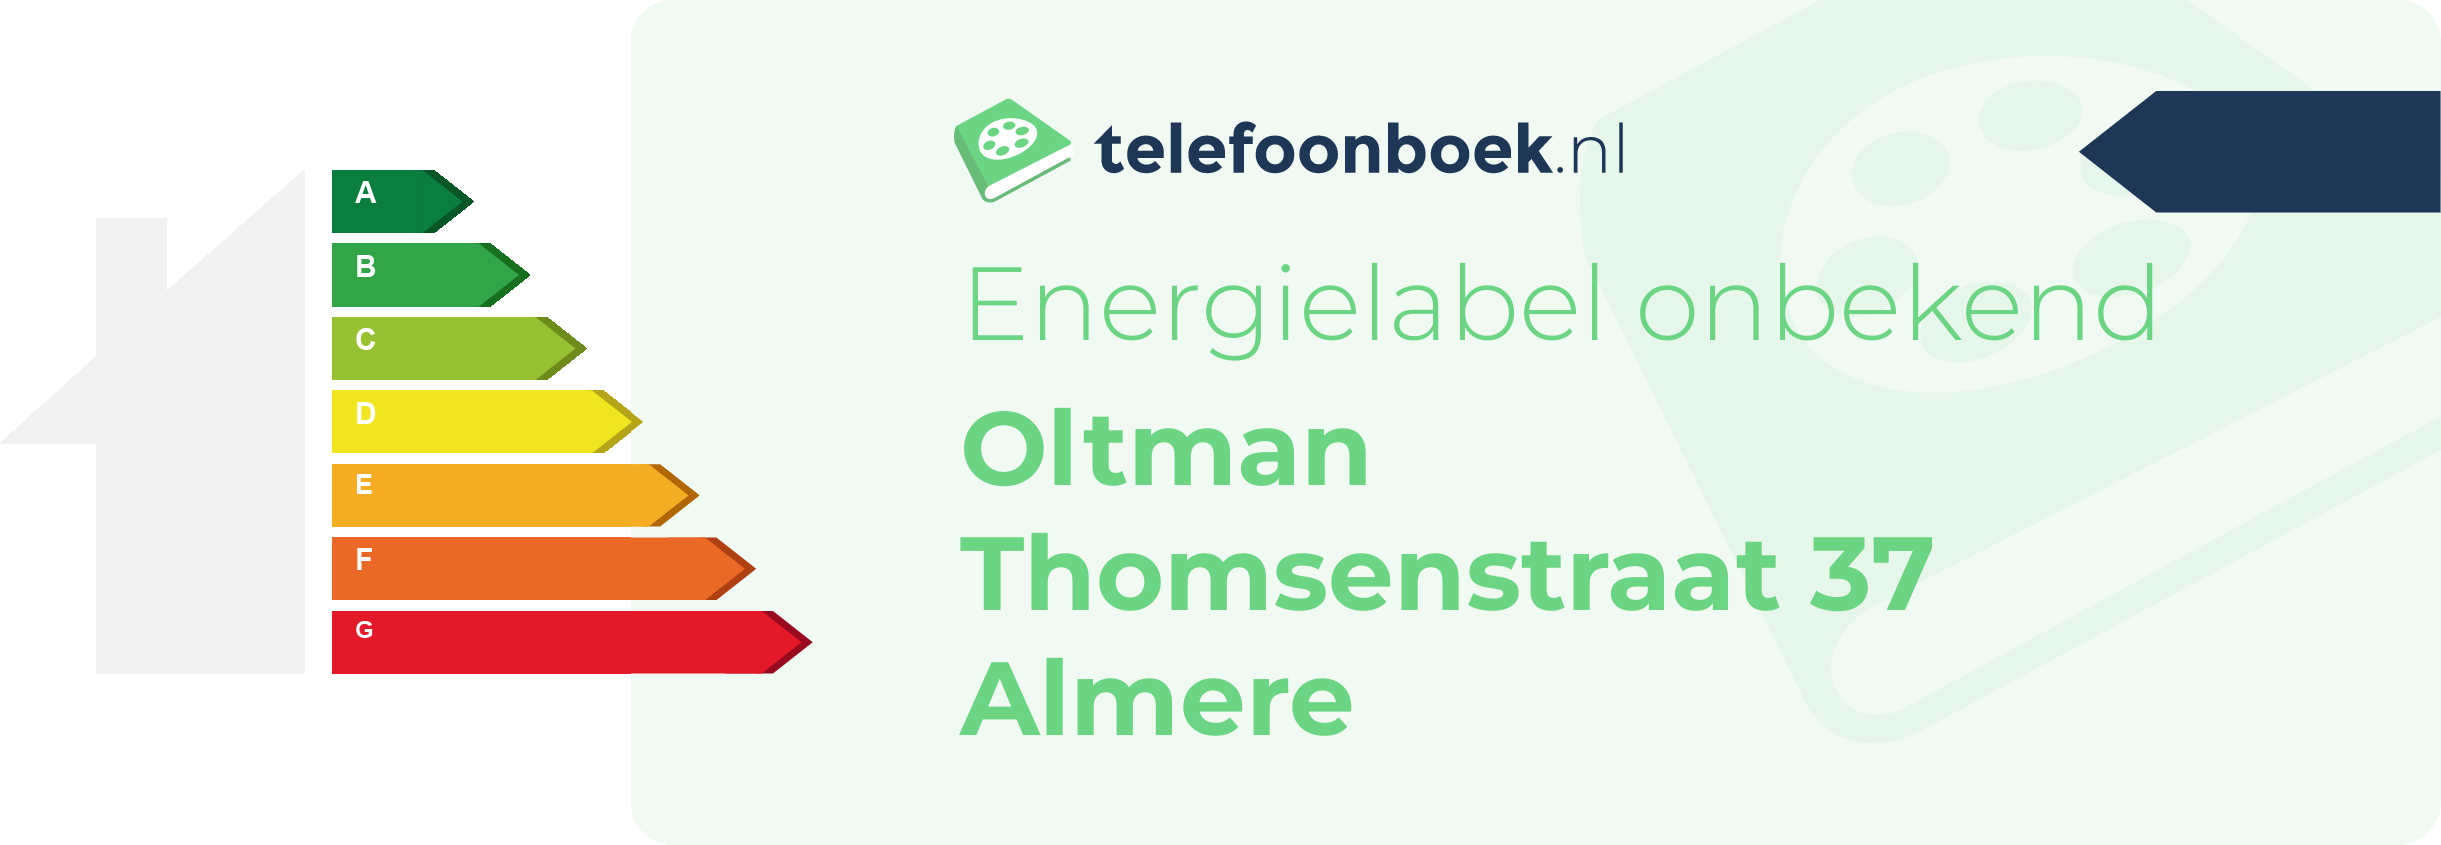 Energielabel Oltman Thomsenstraat 37 Almere